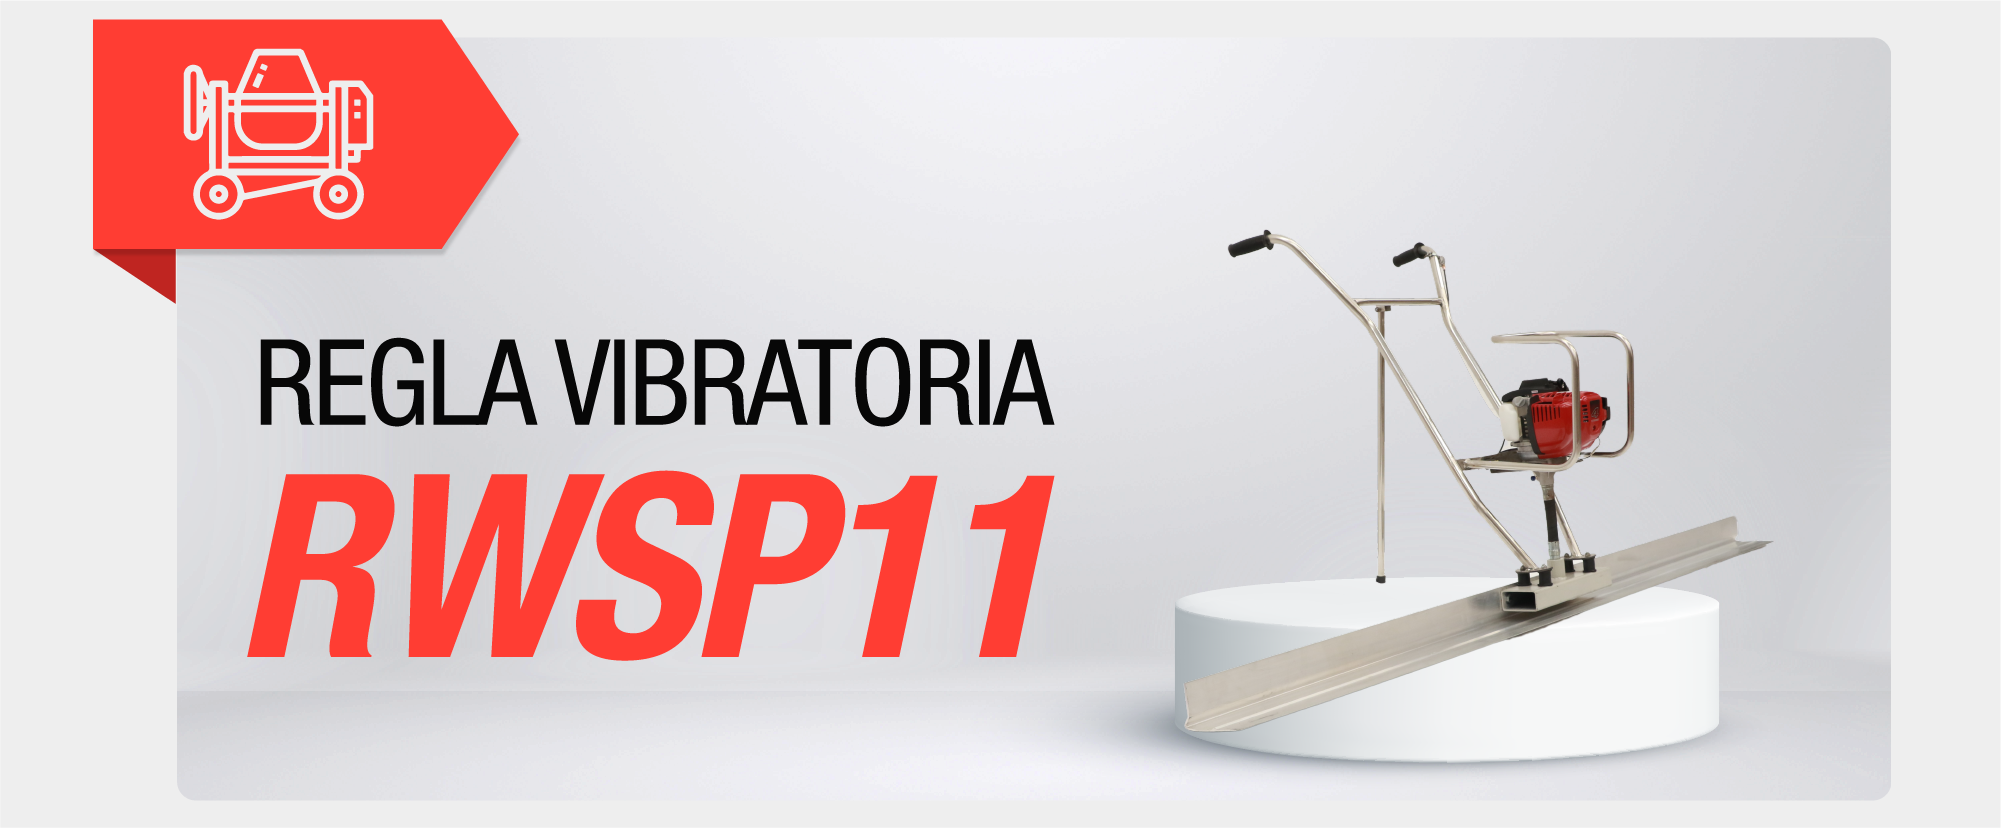 Regla vibratoria RWSP11 - 2024 CON-M003